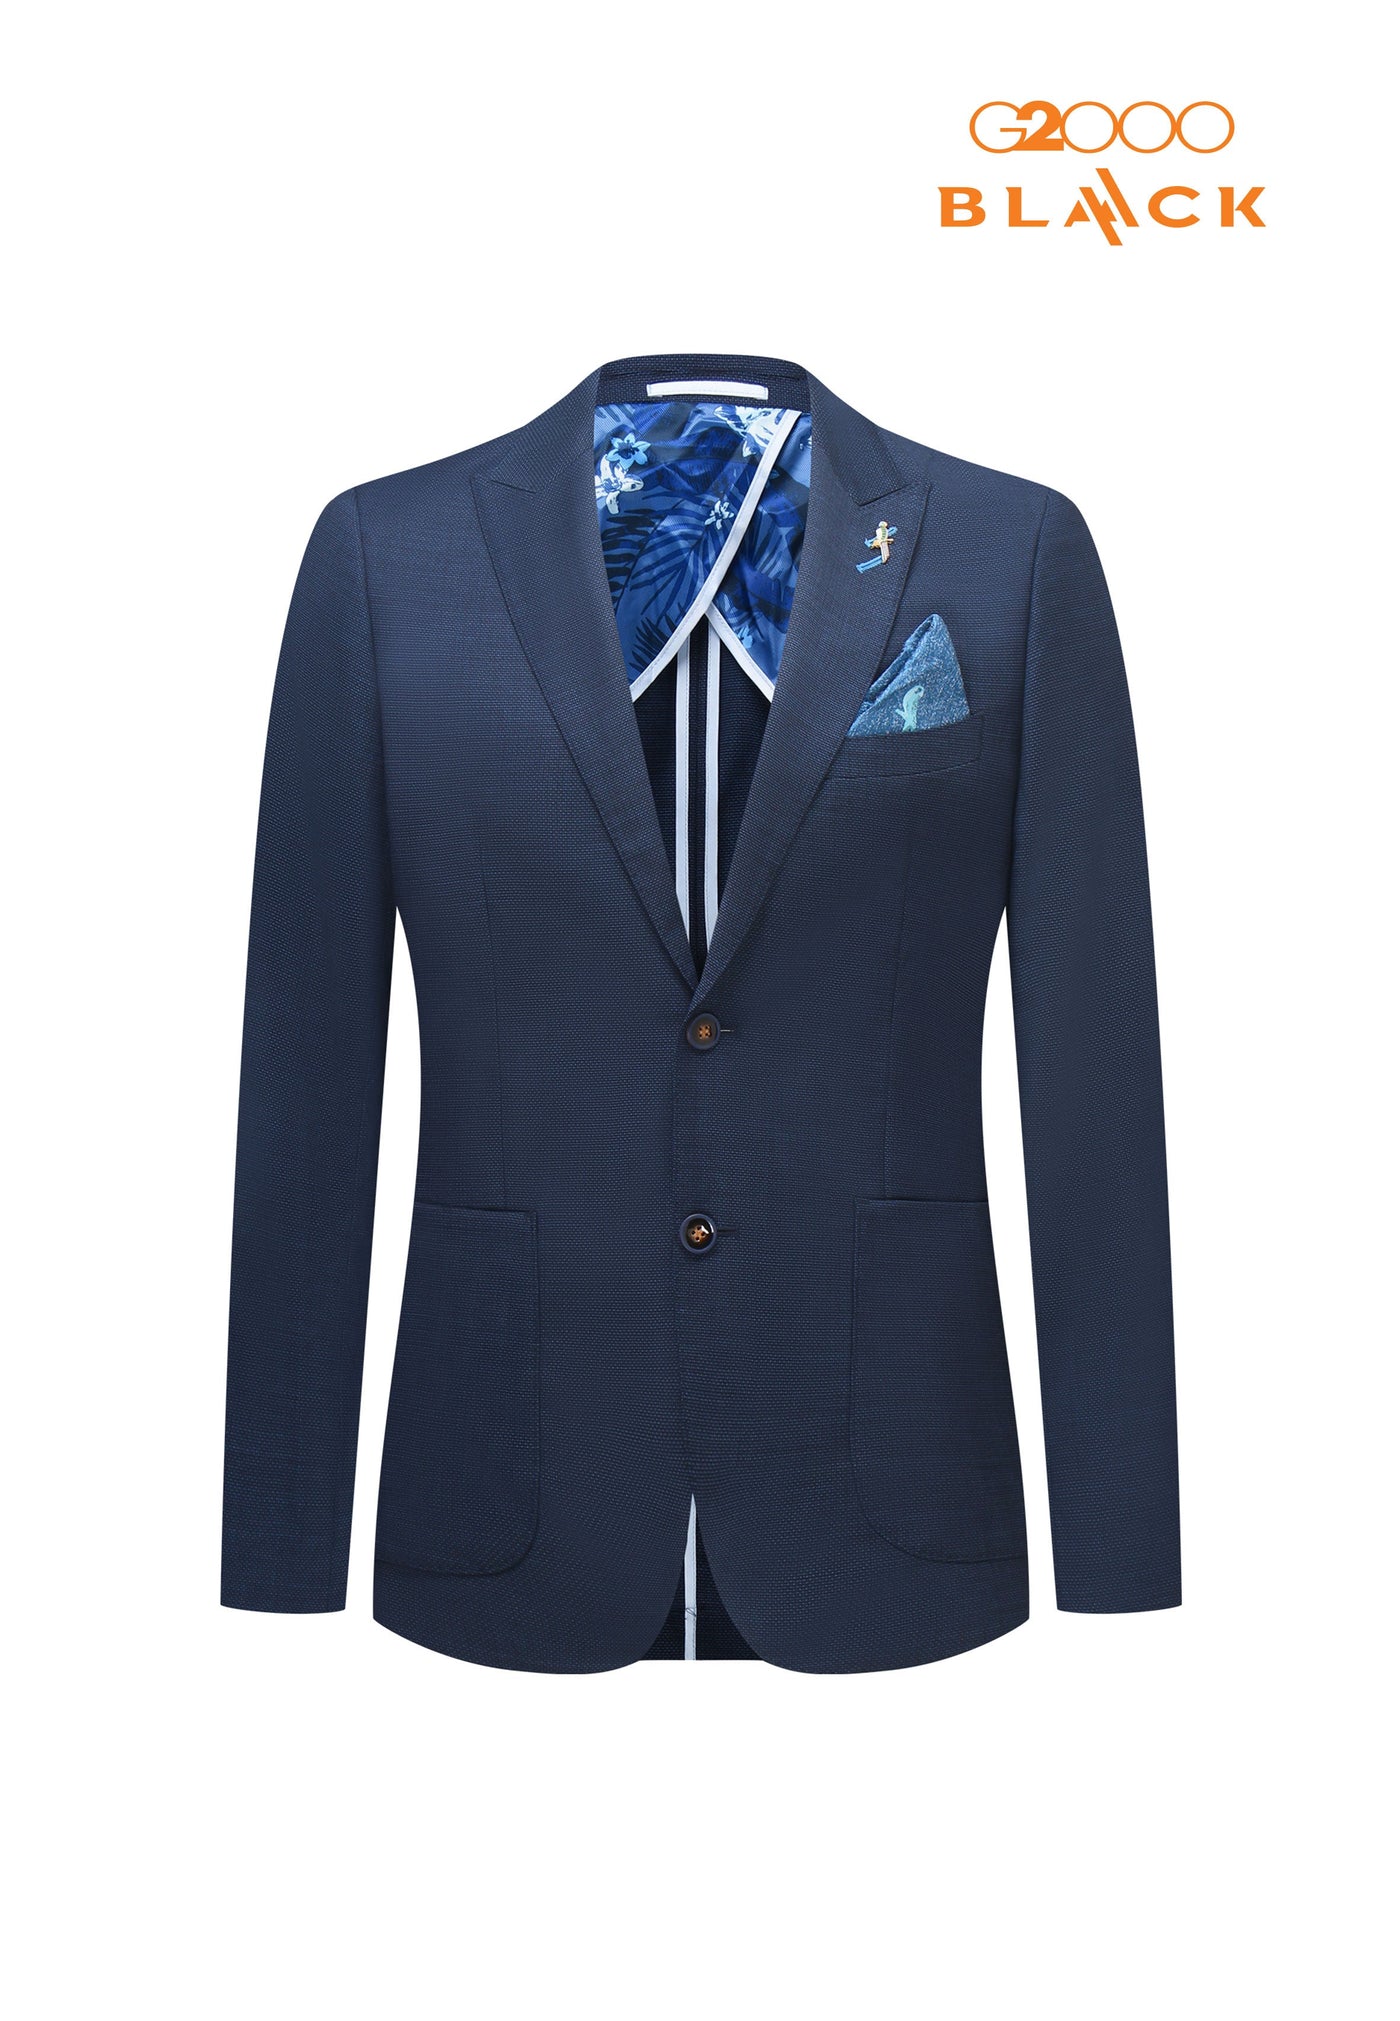 Men Clothing "Blaack" 100% Wool Woven Suit Blazer Smart Fit